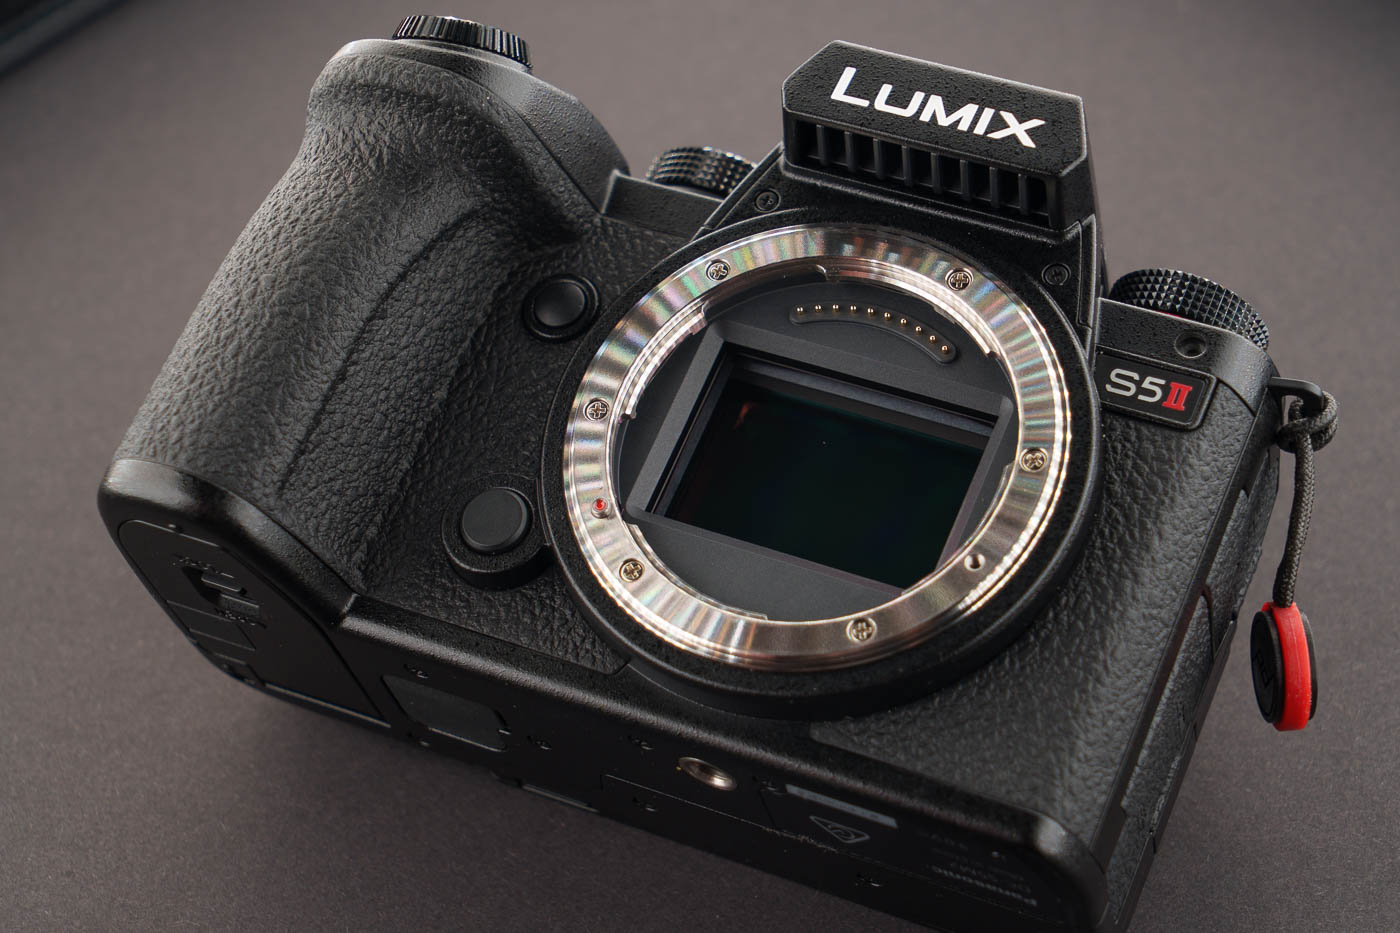 Lumix S5 II